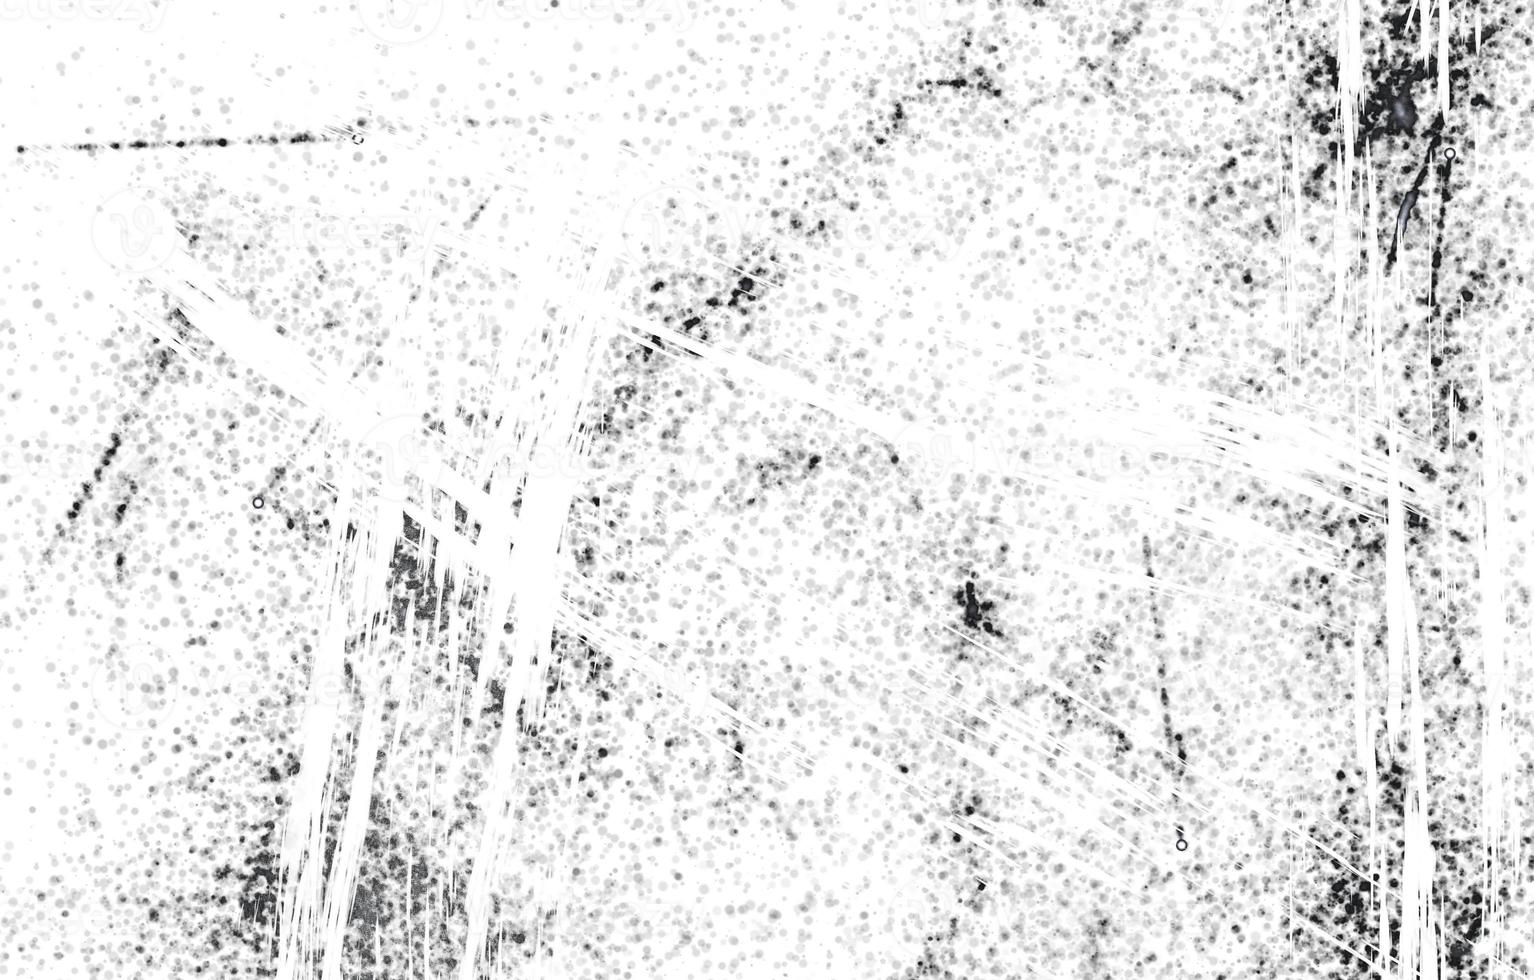 zero grunge urbano background.grunge preto e branco urbano. fundo de aflição de sobreposição de poeira bagunçada escura. foto